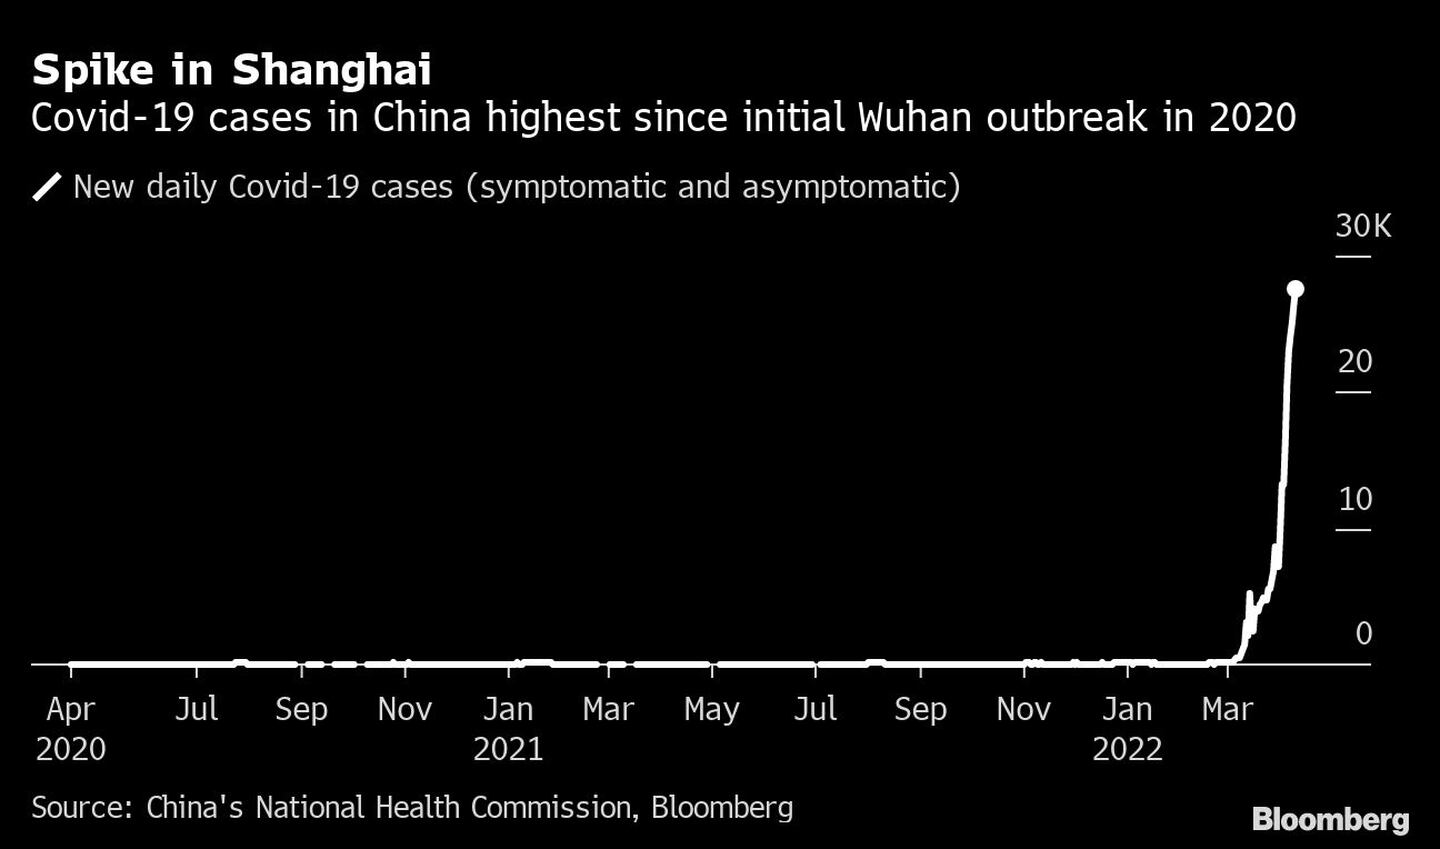 El Covid-19 en China es el más alto desde el brote inicial de Wuhan en 2020dfd